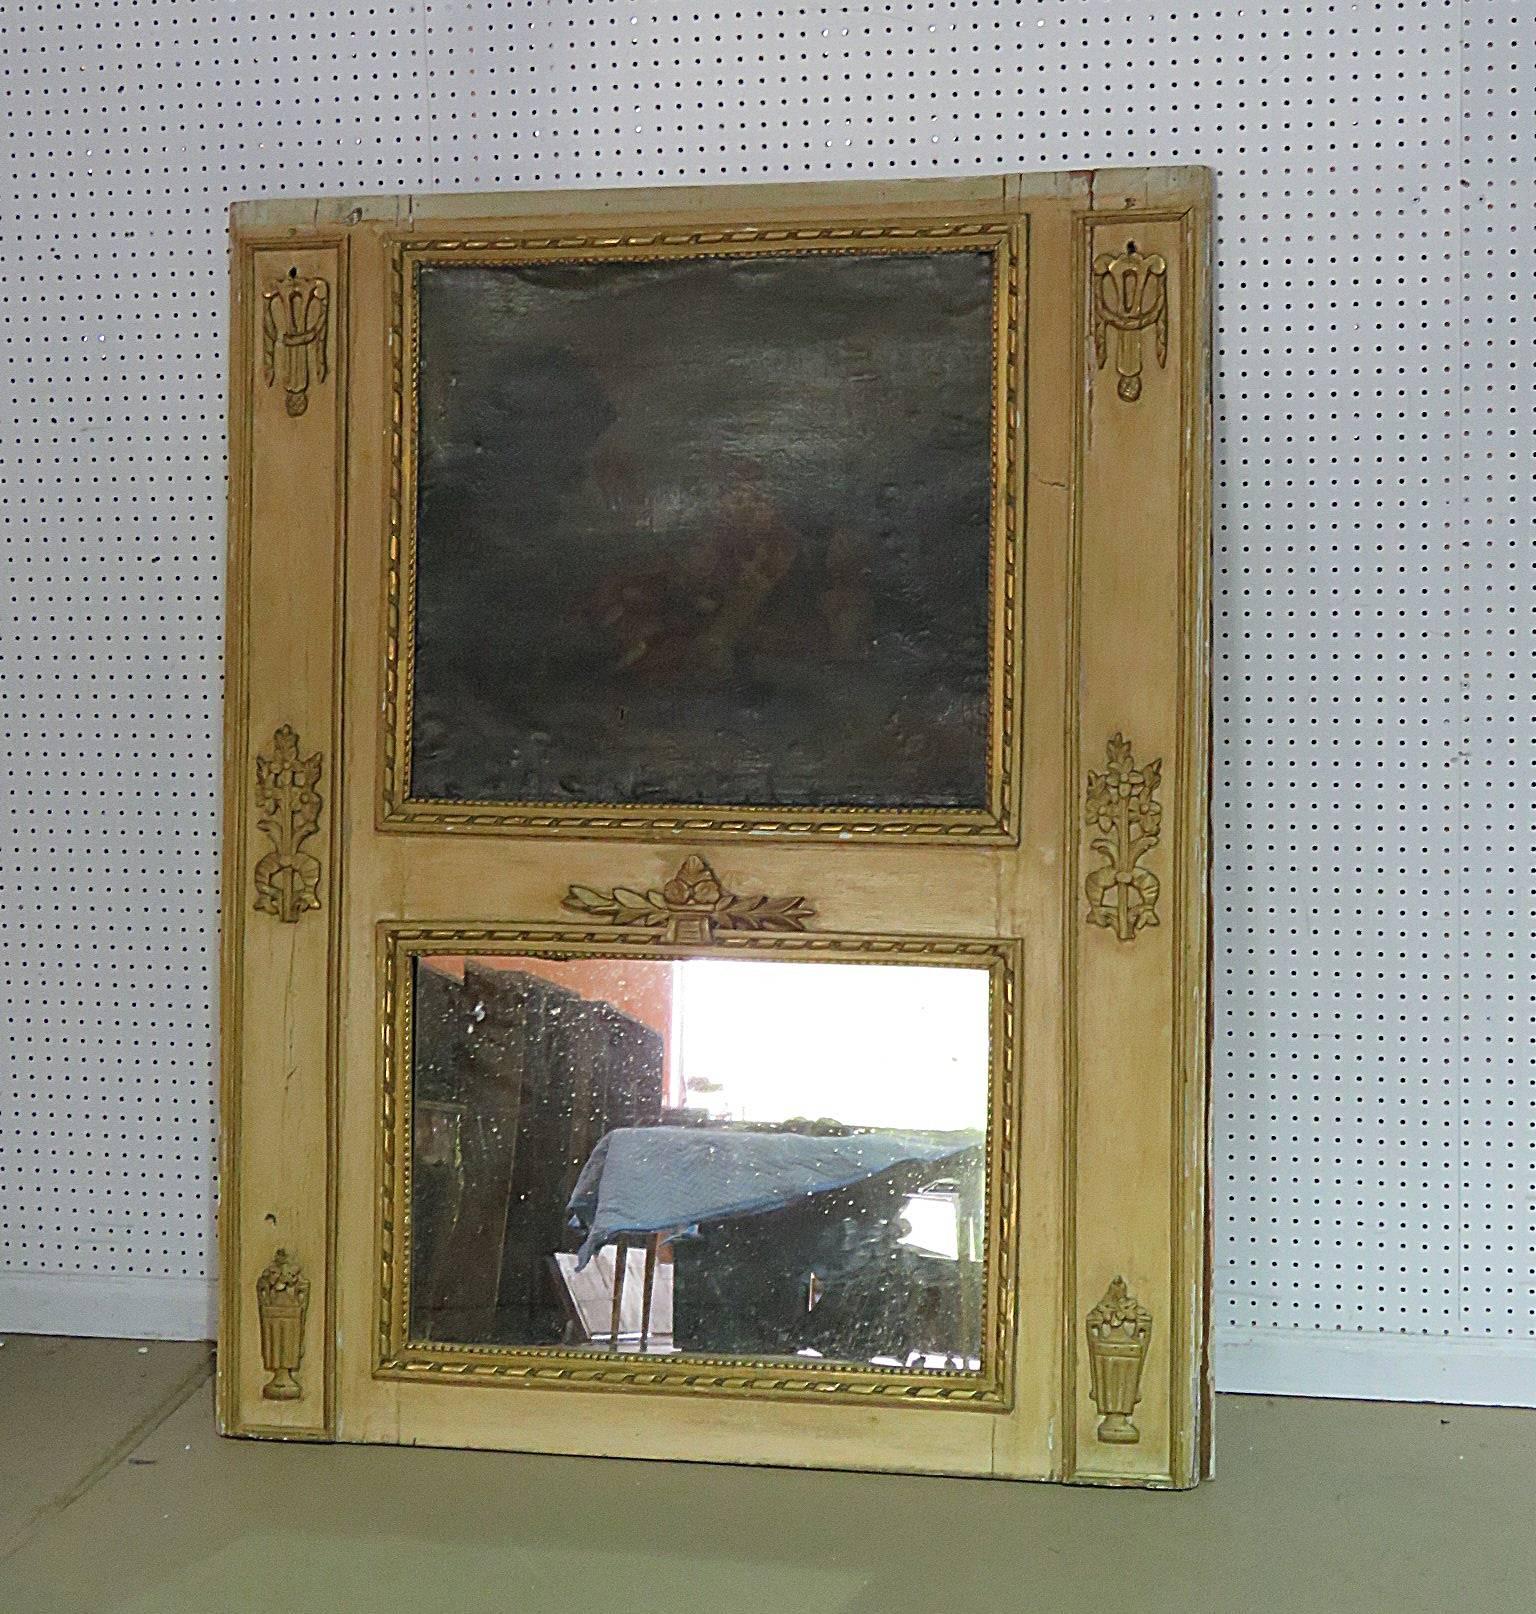 Miroir à trumeau de style Louis XVI du XVIIIe siècle français avec garniture dorée.